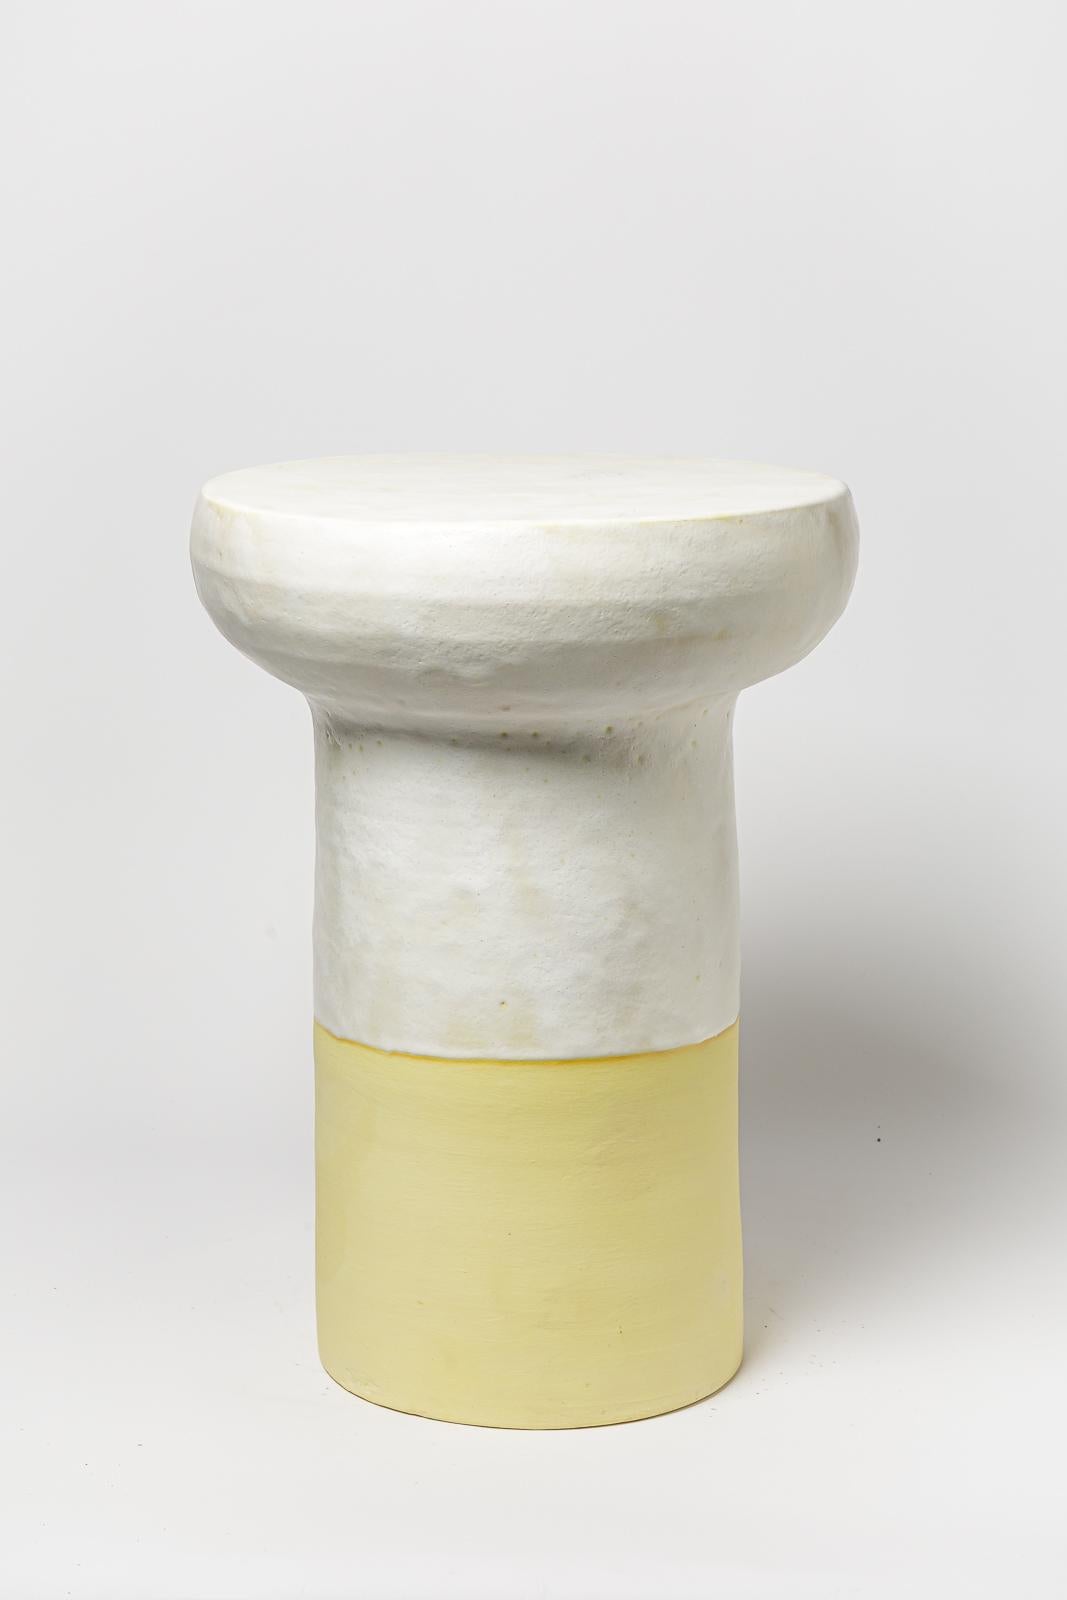 Weiß und gelb glasierter Keramikhocker oder Couchtisch von Mia Jensen. 
Künstlersignatur unter dem Sockel. 2023.
H : 21,6' x 15,3' Zoll.